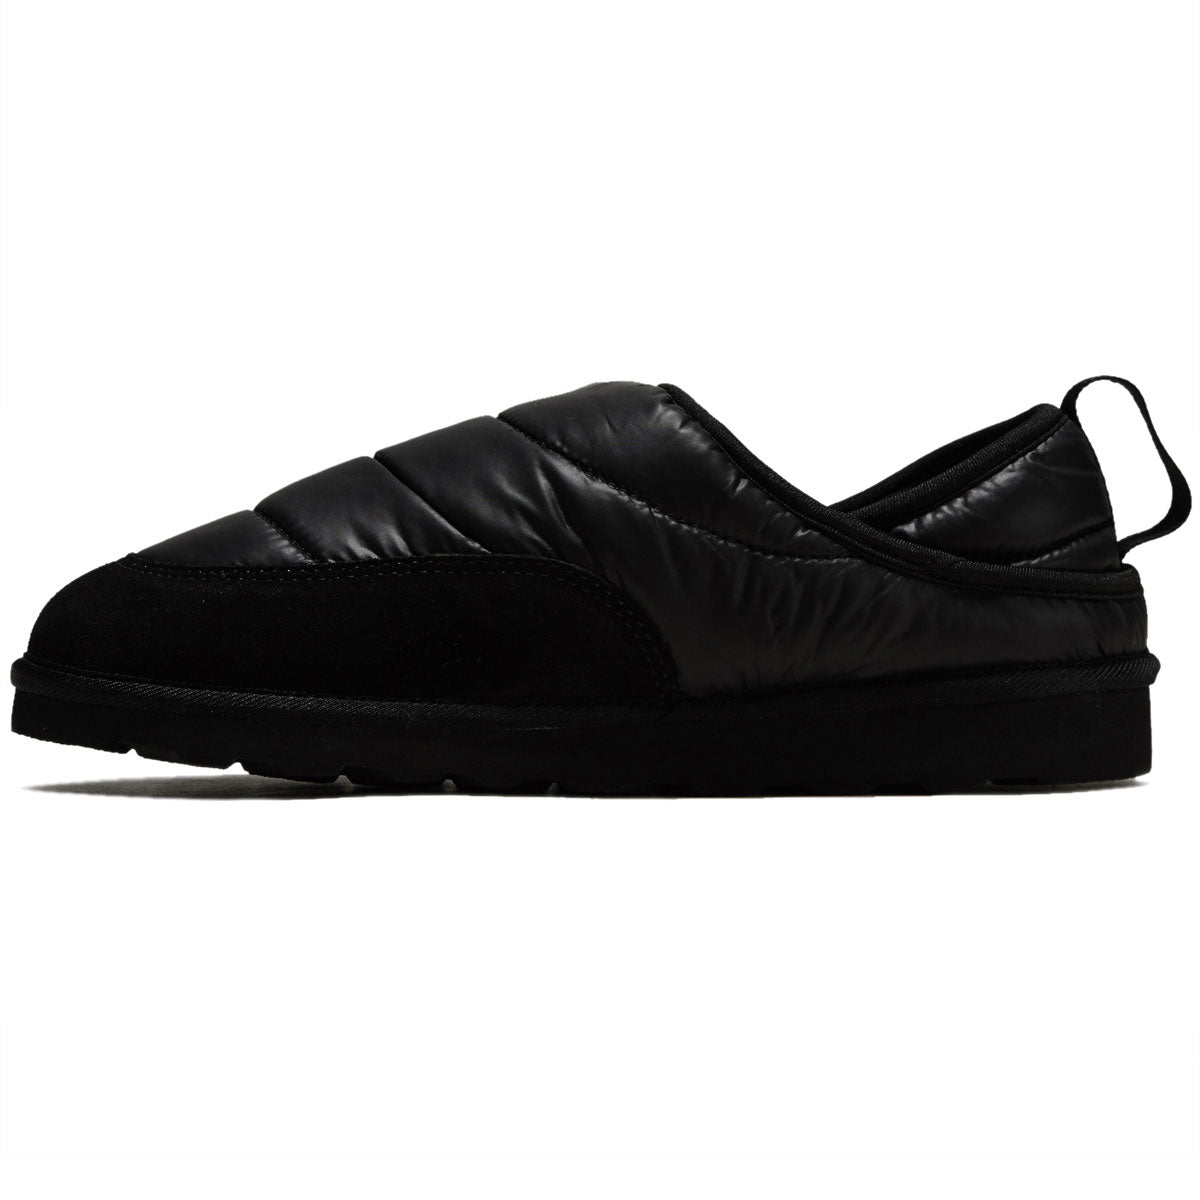 Lakai Owen Slipper Shoes - Black Nylon image 2